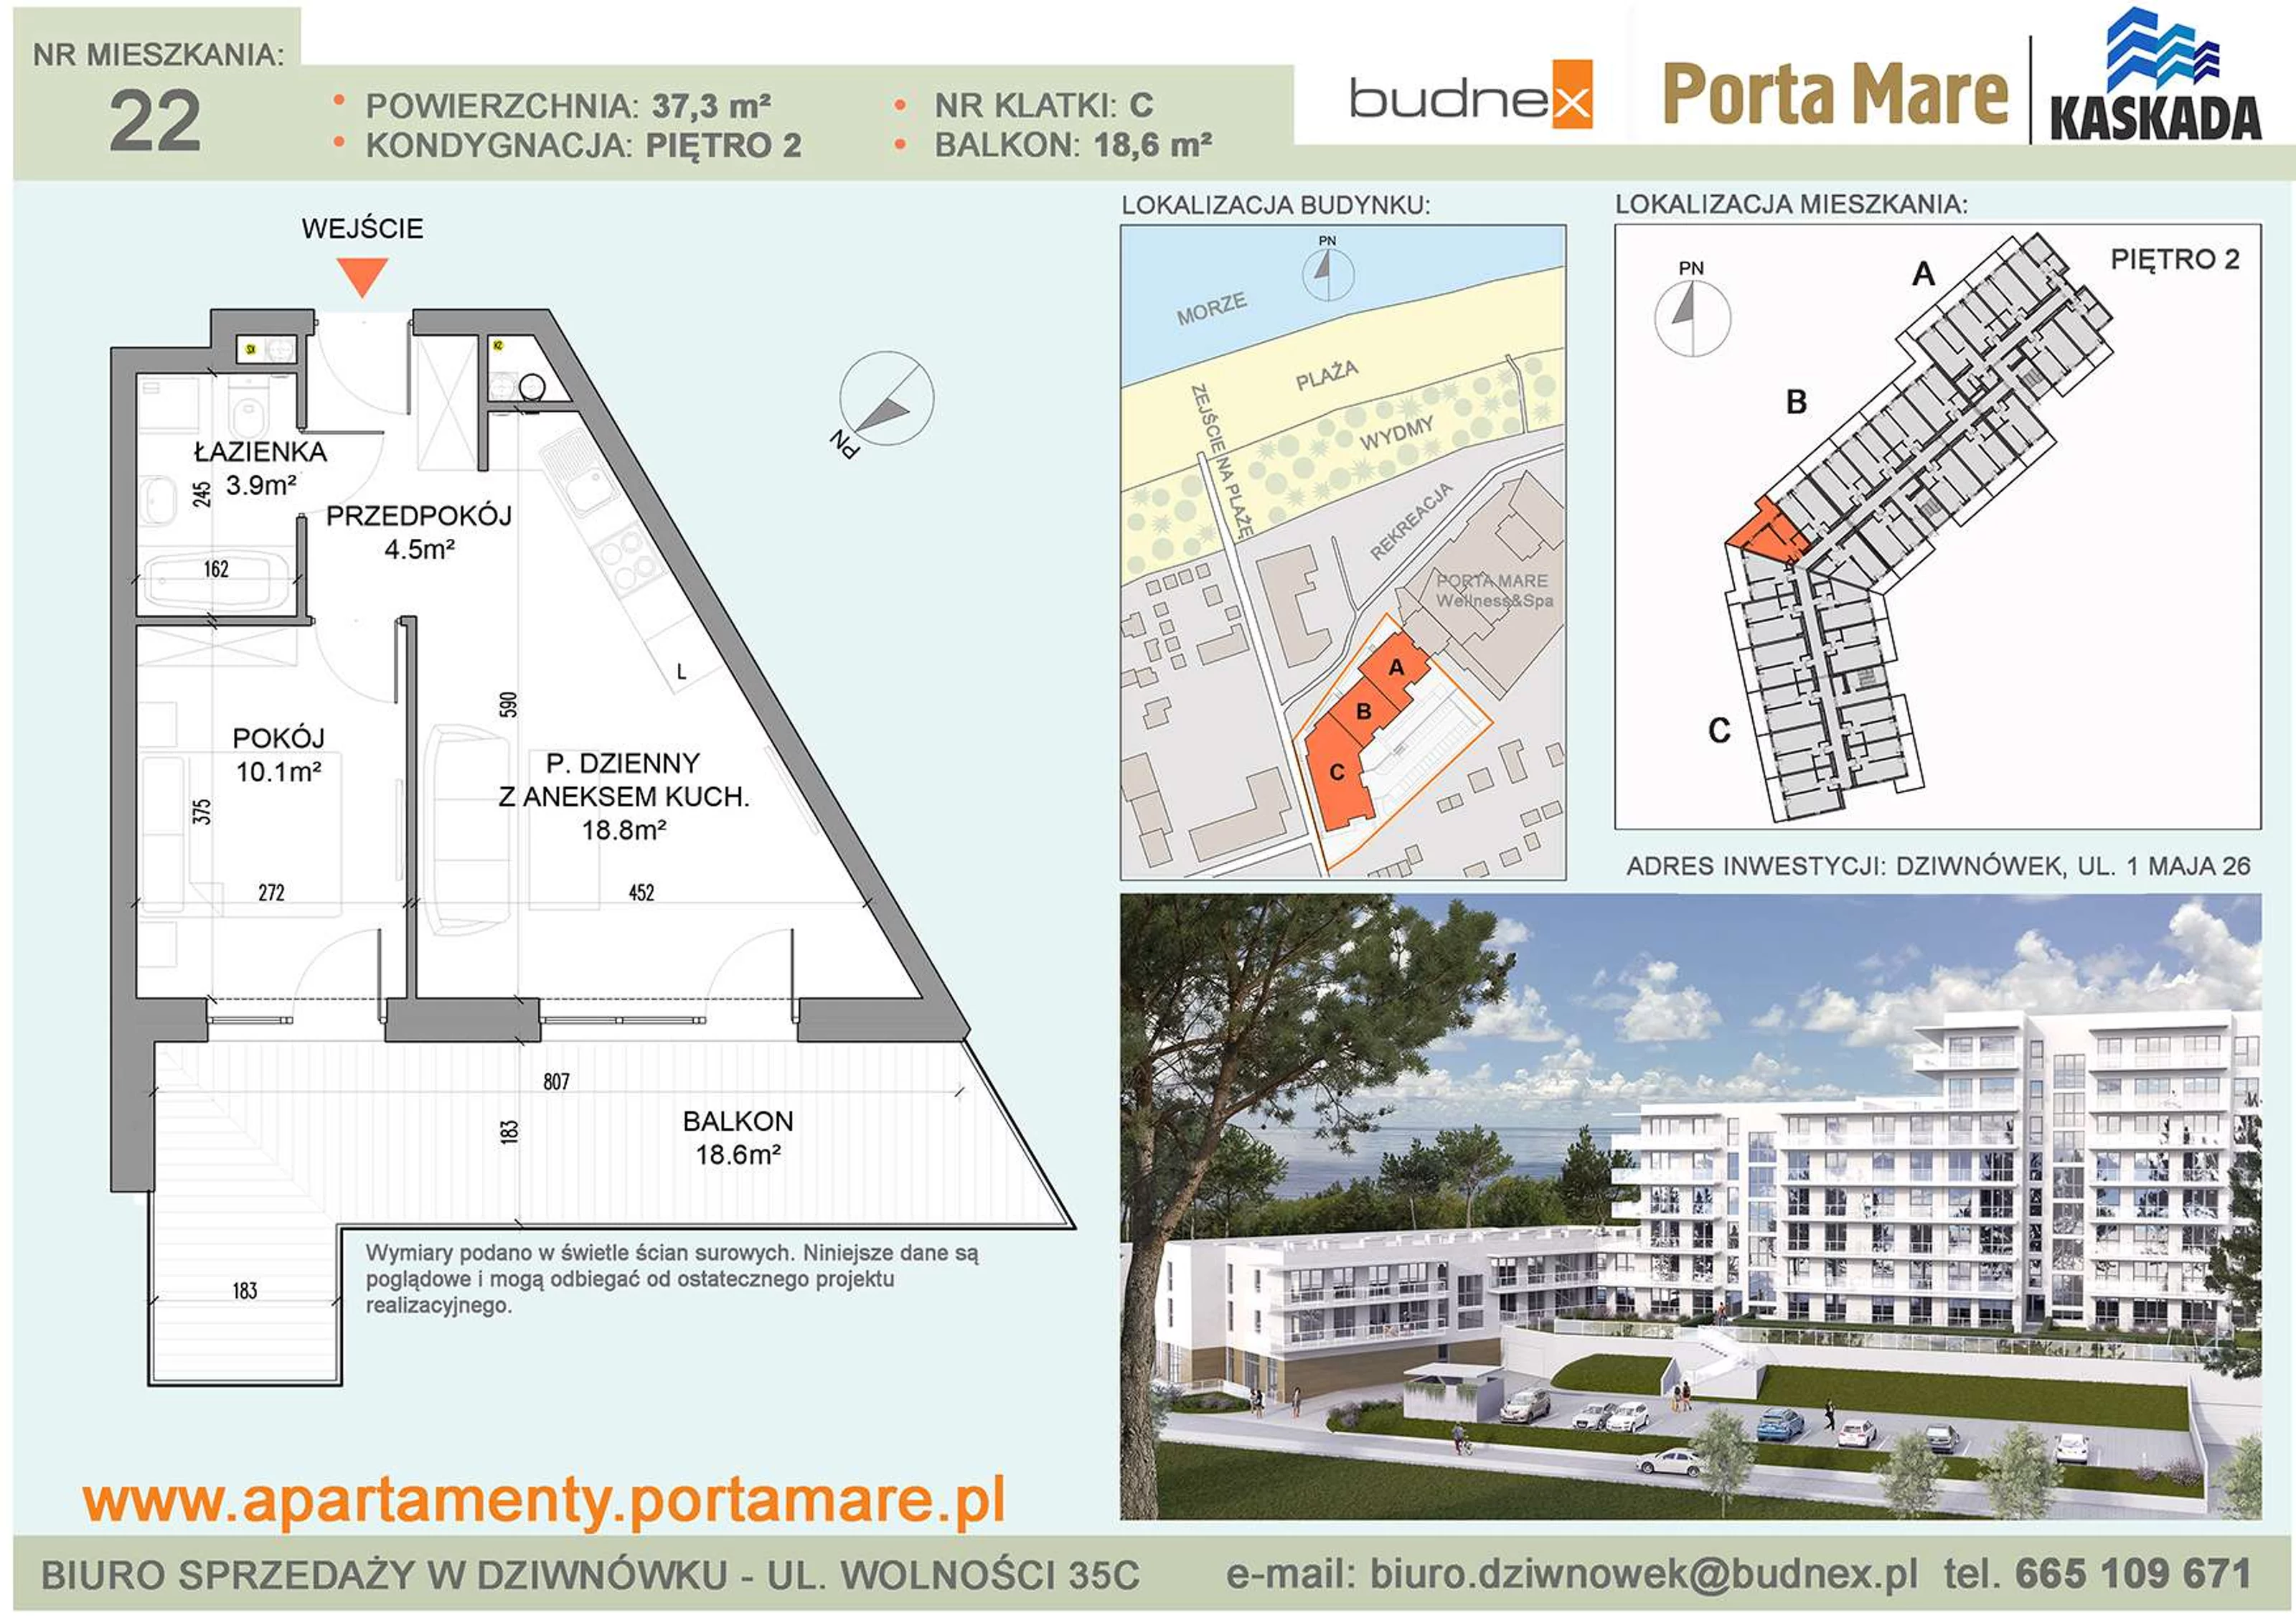 Mieszkanie 37,30 m², piętro 2, oferta nr C/M22, Porta Mare Kaskada, Dziwnówek, ul. 1 Maja 26